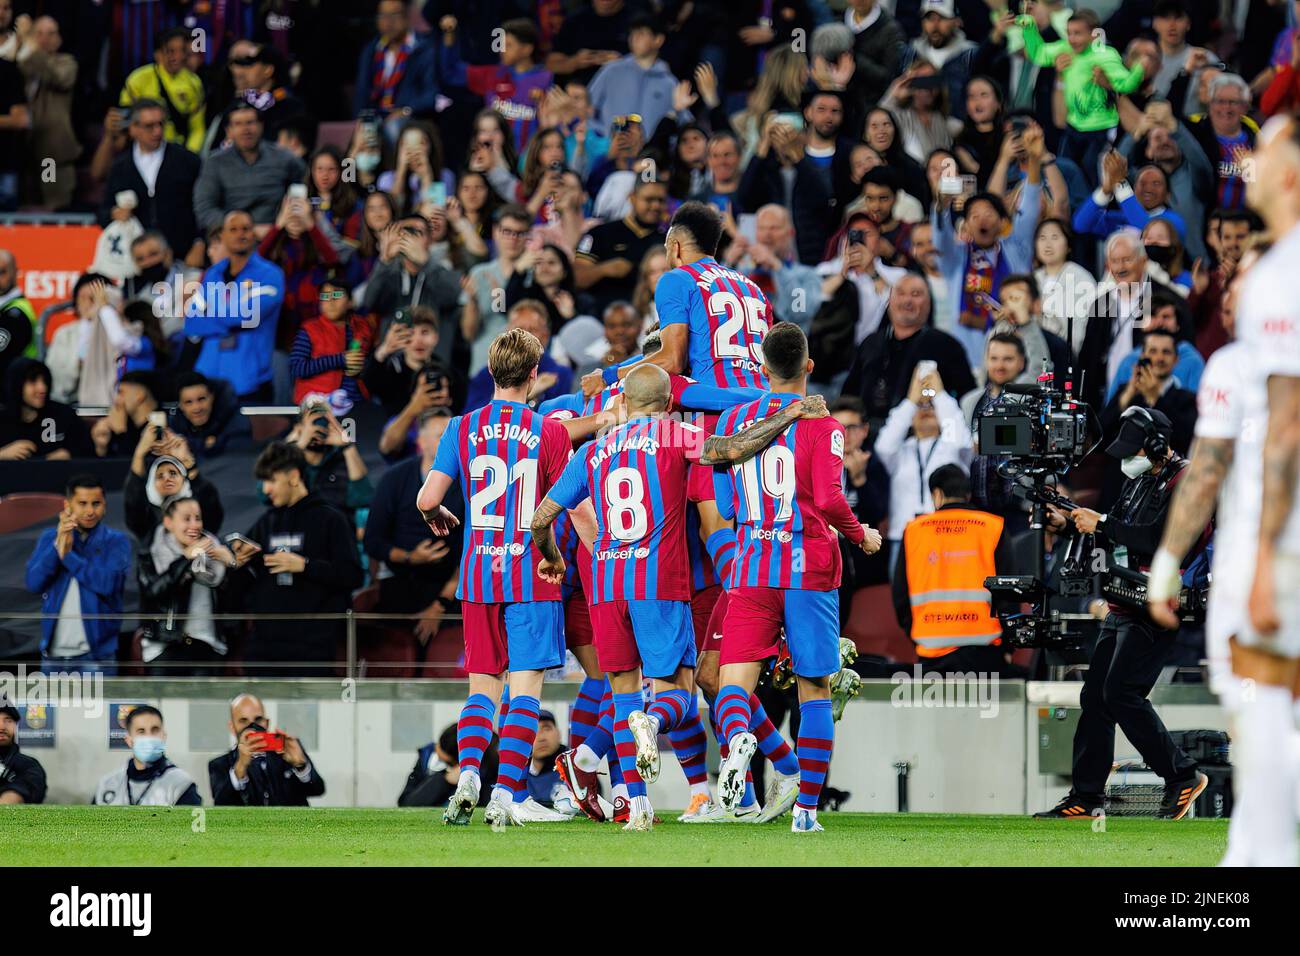 BARCELONA - MAYO 1: Los jugadores de Barcelona celebran después de marcar un gol en el partido de La Liga entre el FC Barcelona y el RCD Mallorca en el estadio Camp Nou Foto de stock